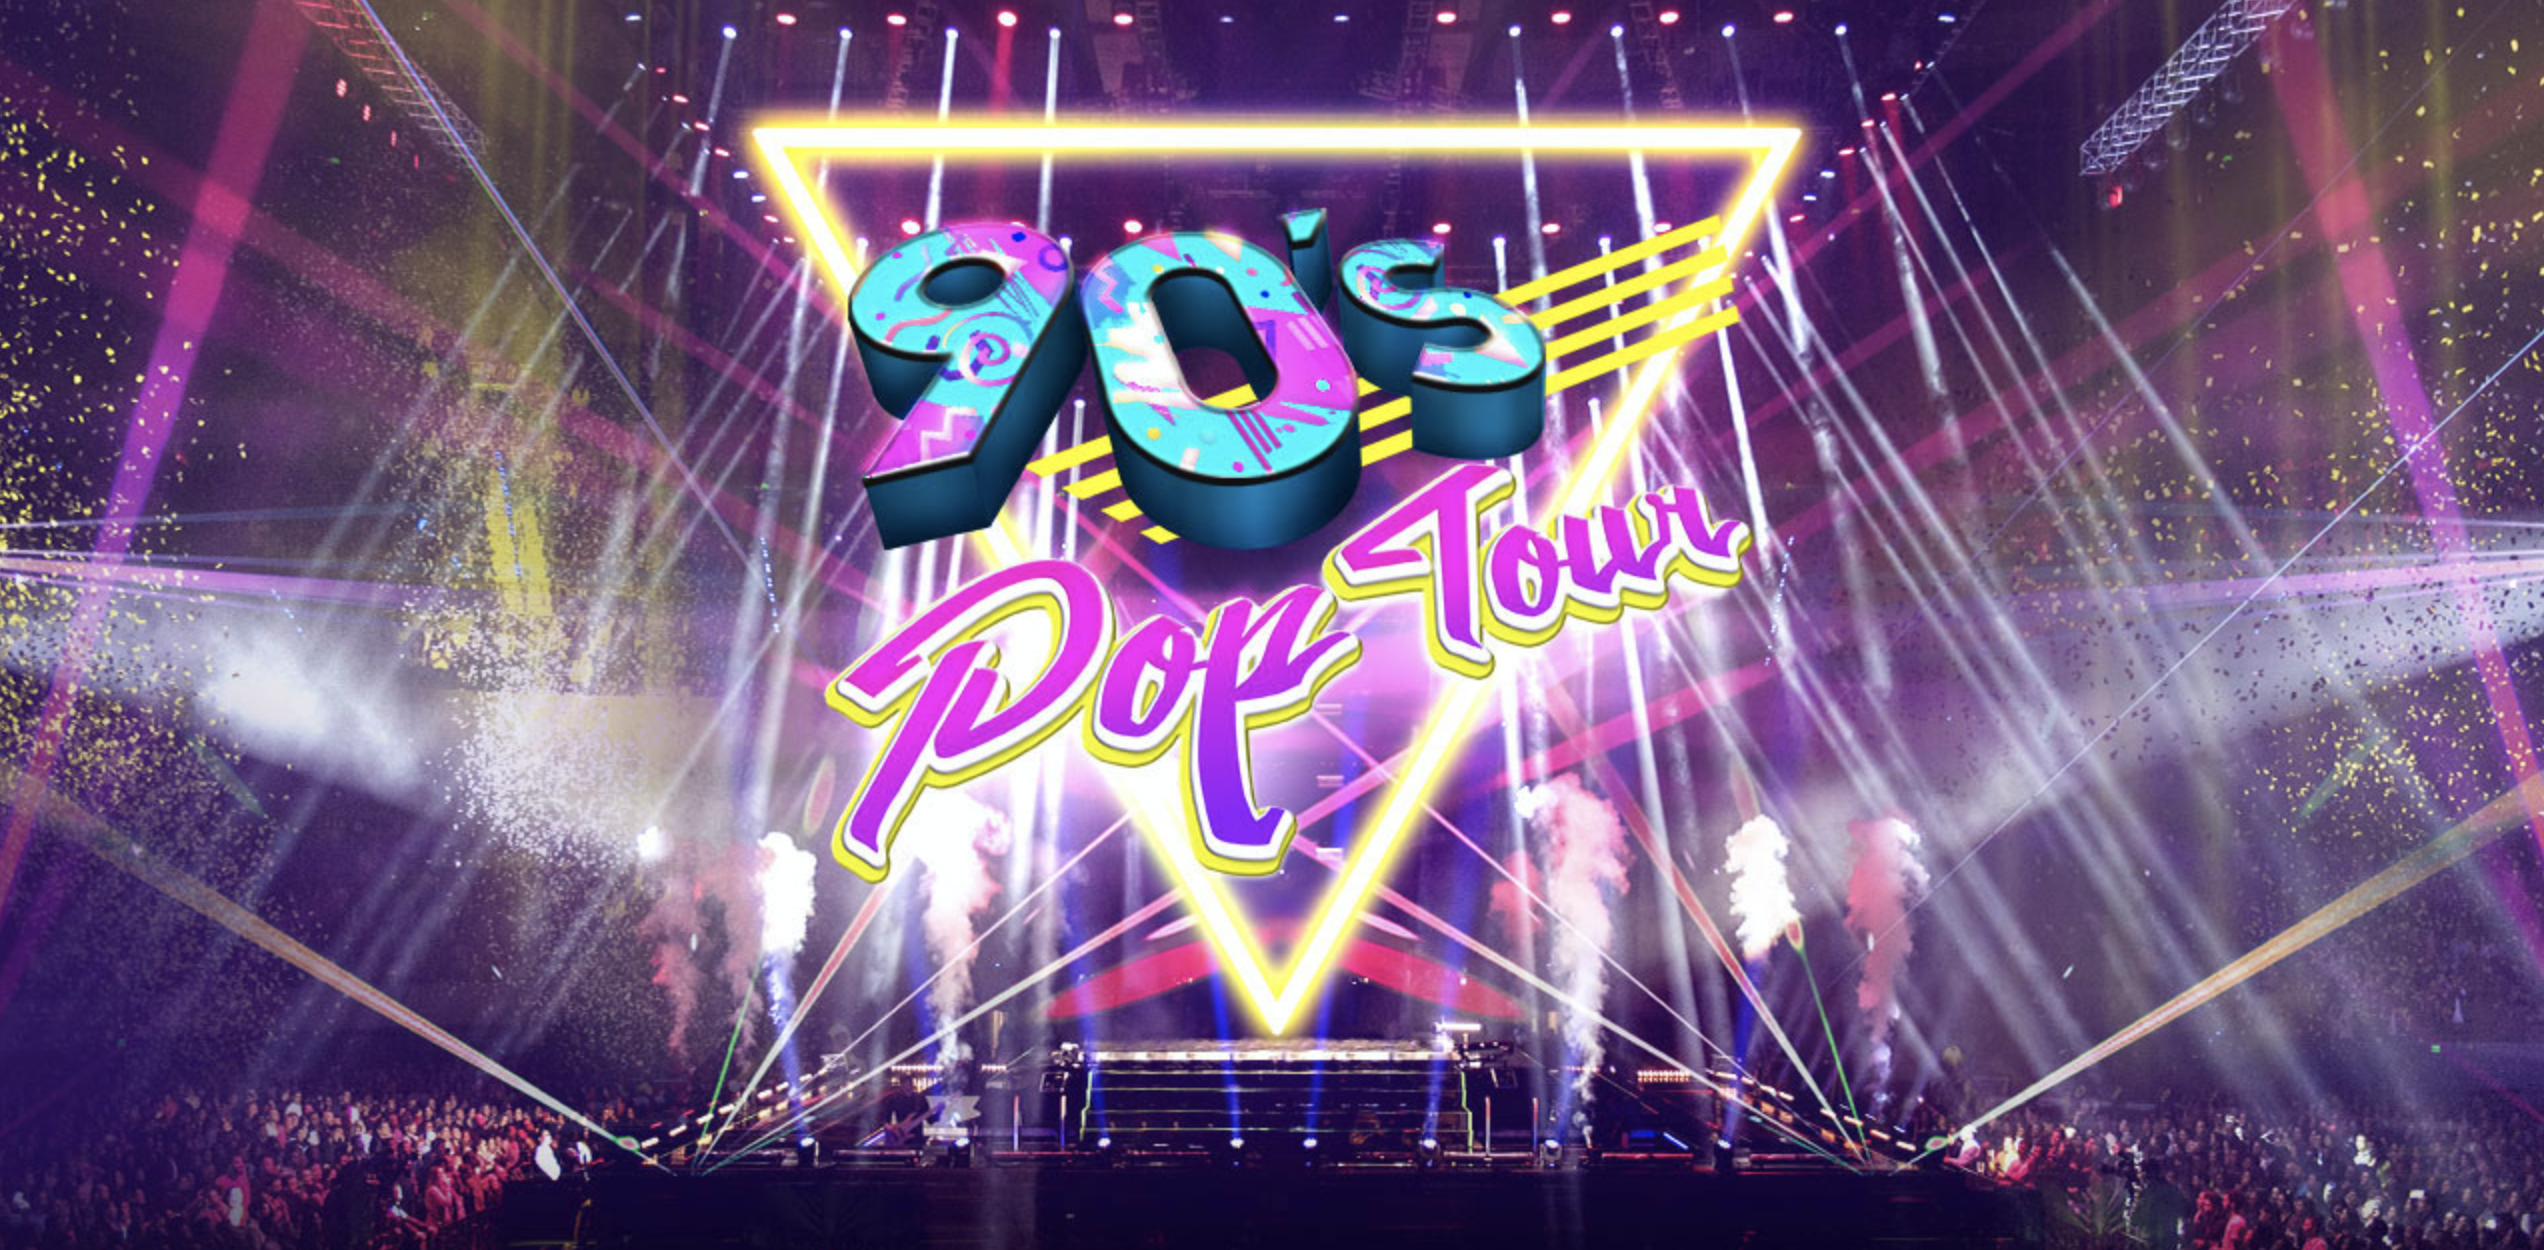 90s pop tour video